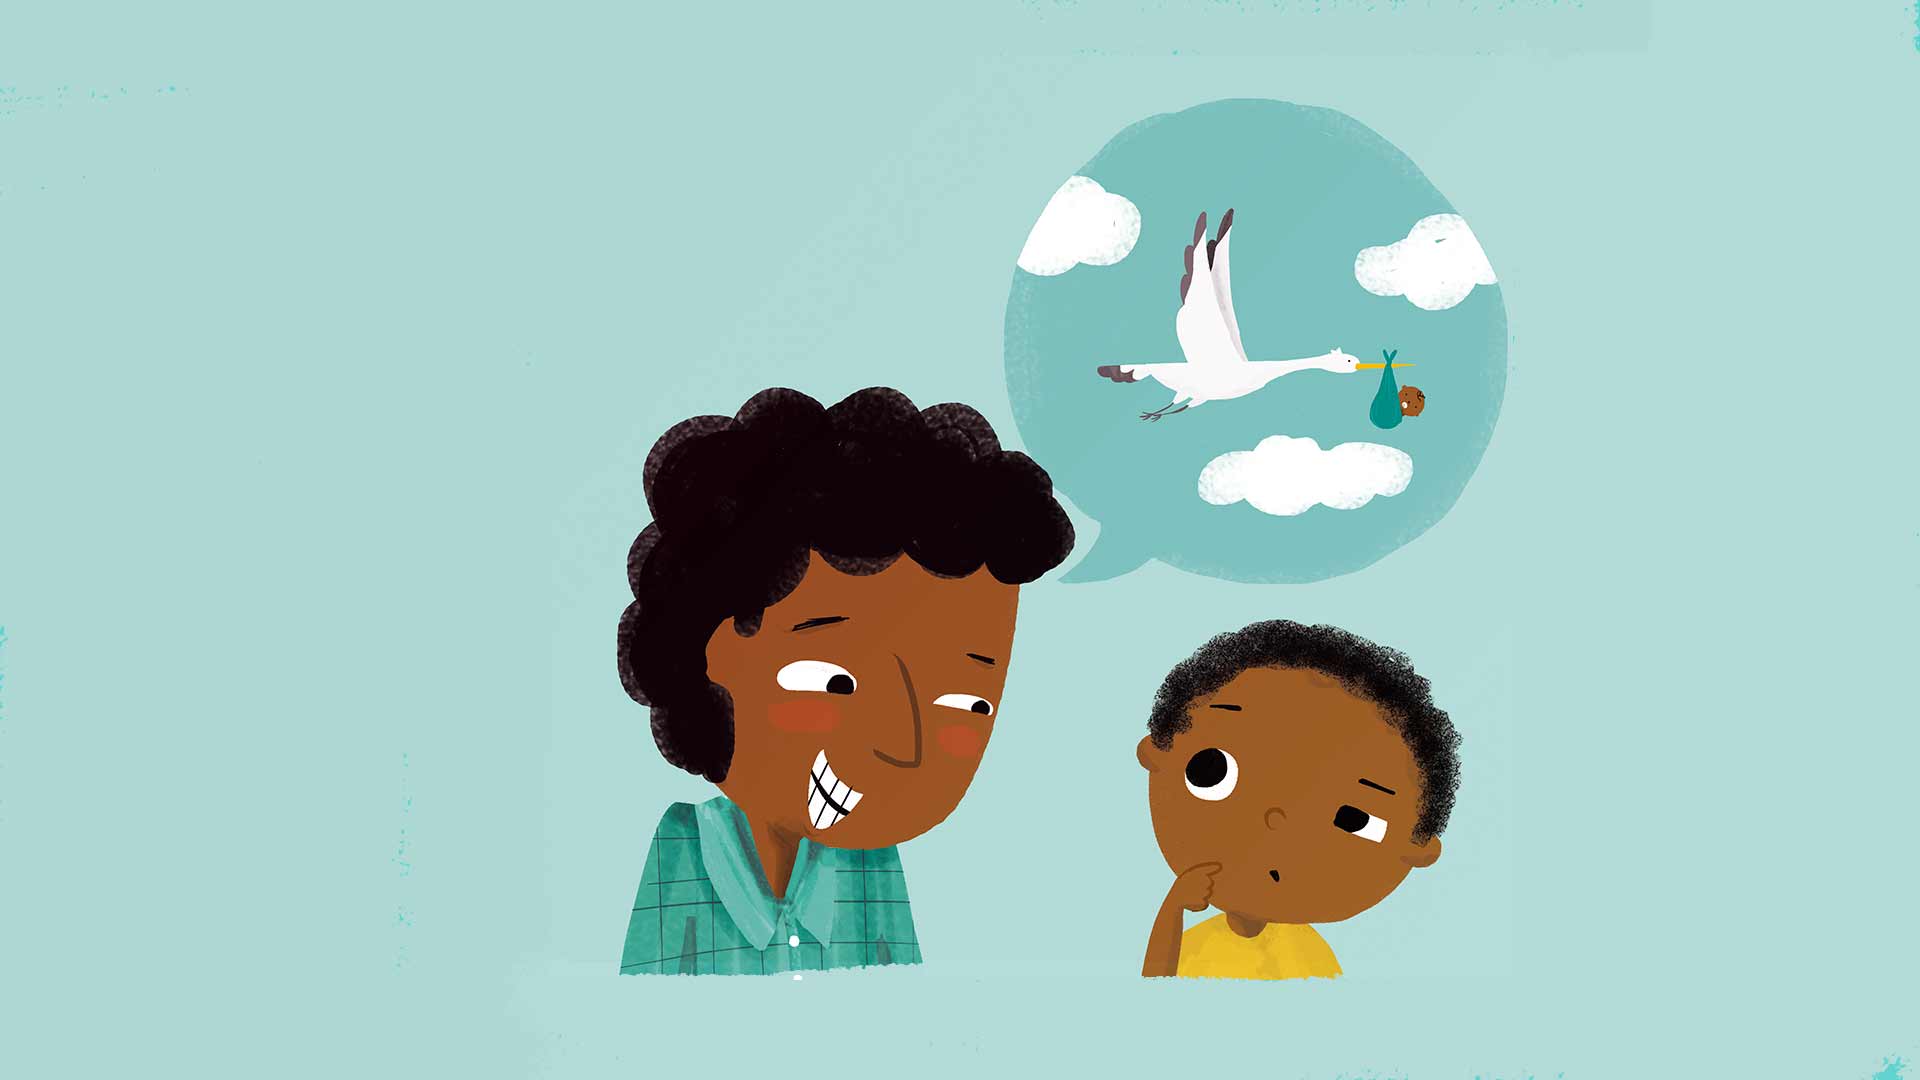 A Ilustração de pai e filho, ambos negros conversando. A ilustração também mostra a cegonha levando um bebê no bico